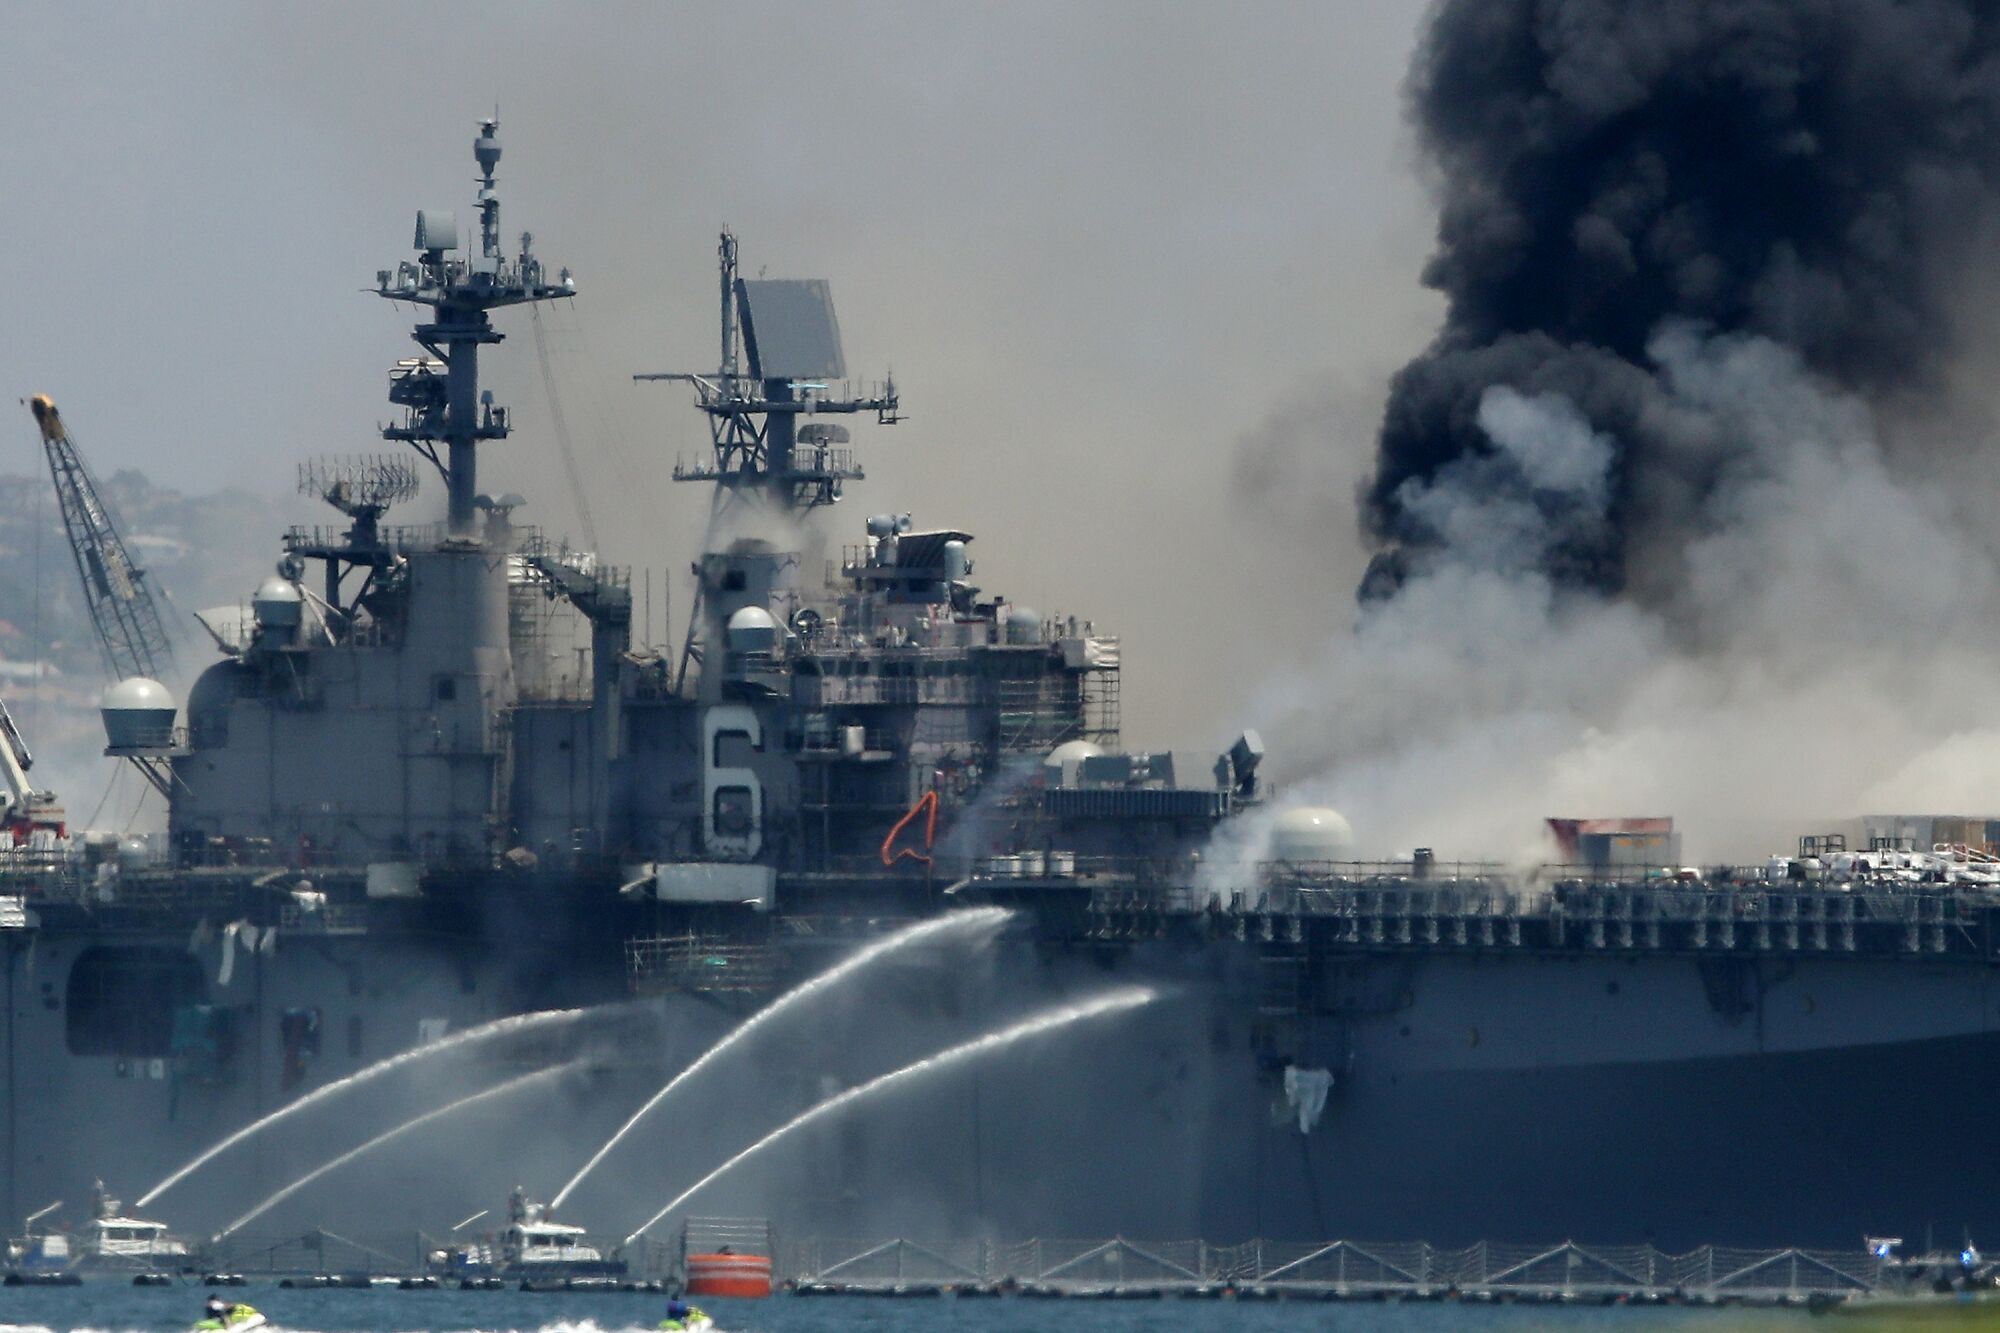 A fire burns on the amphibious assault ship USS Bonhomme Richard 